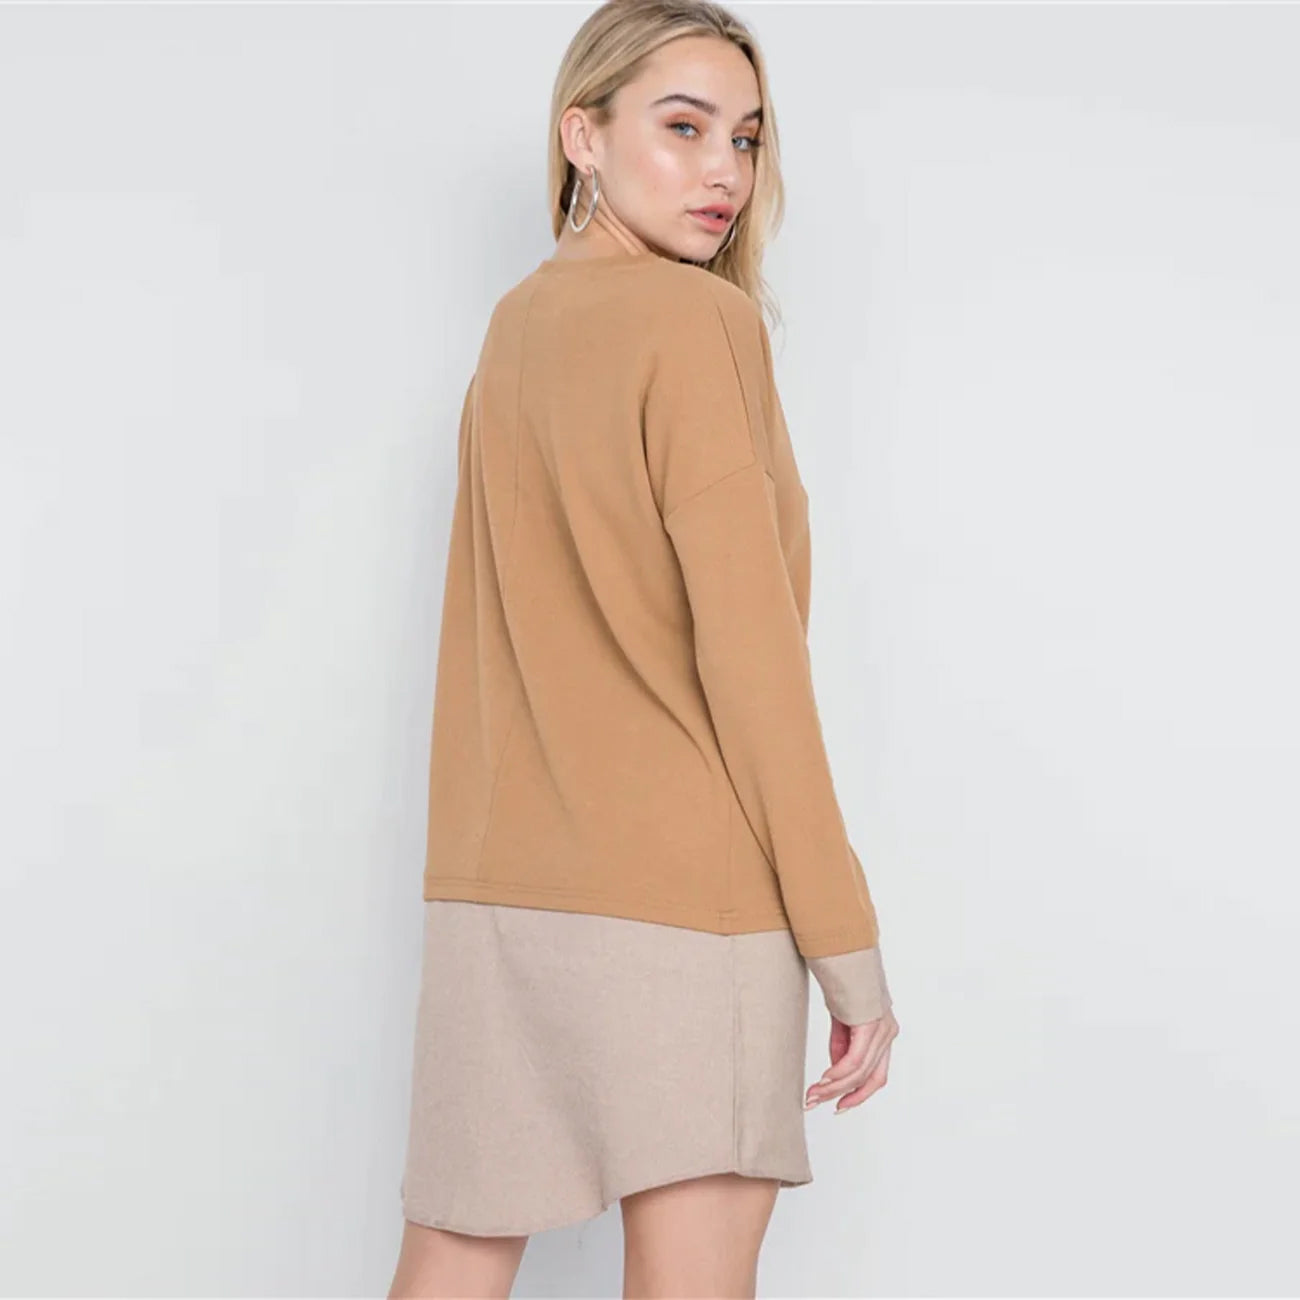 Knit Combo Long Sleeve Women's Sweater Dress